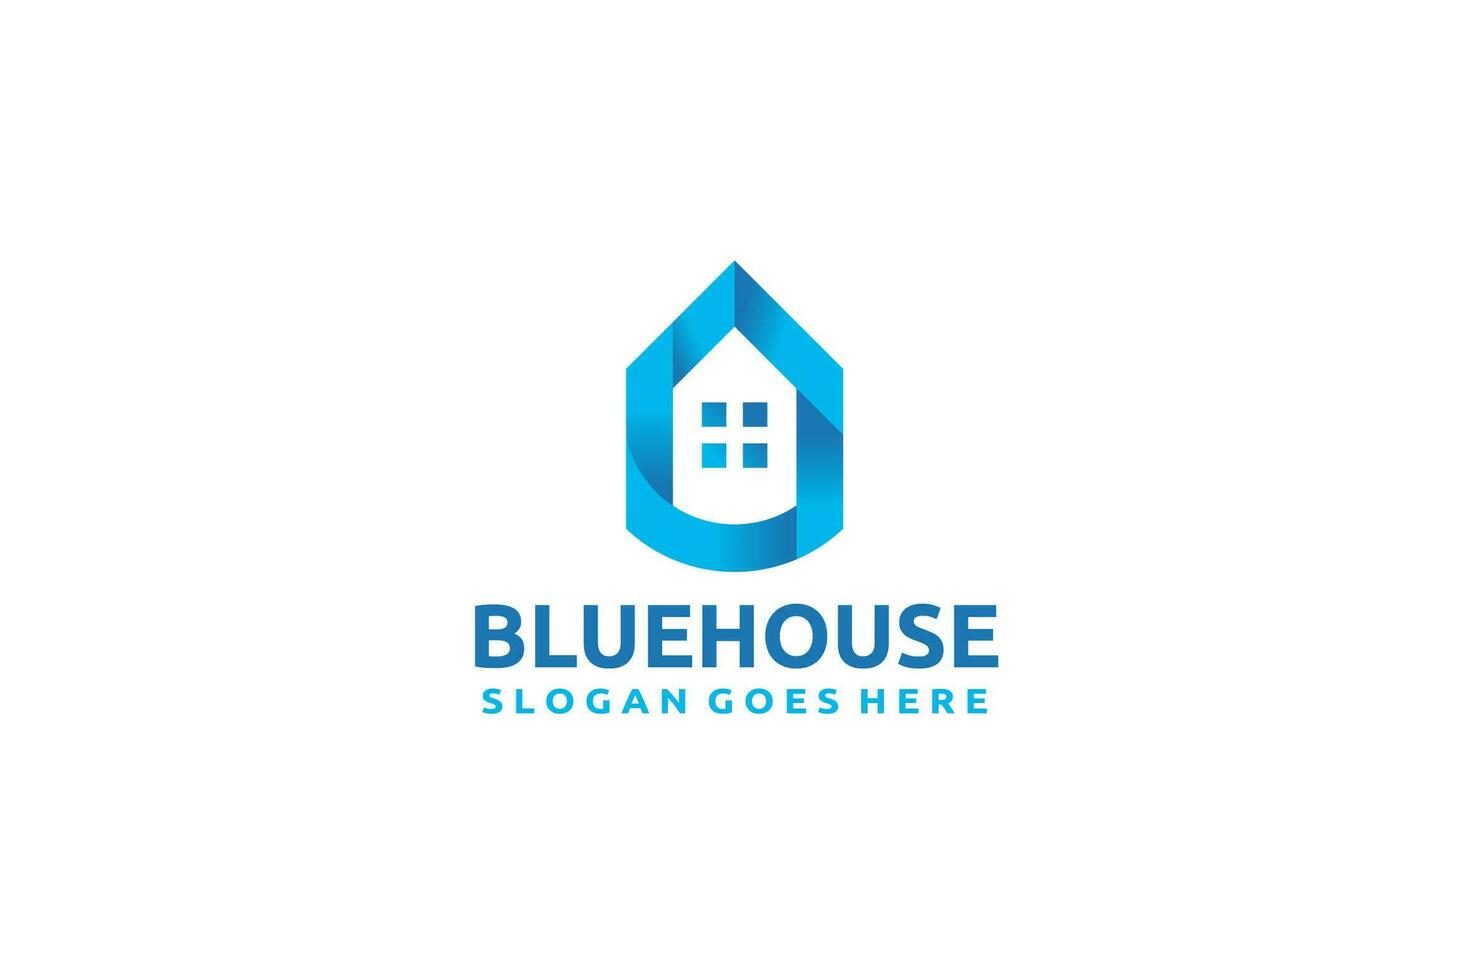 Logo de la maison bleue vecteur